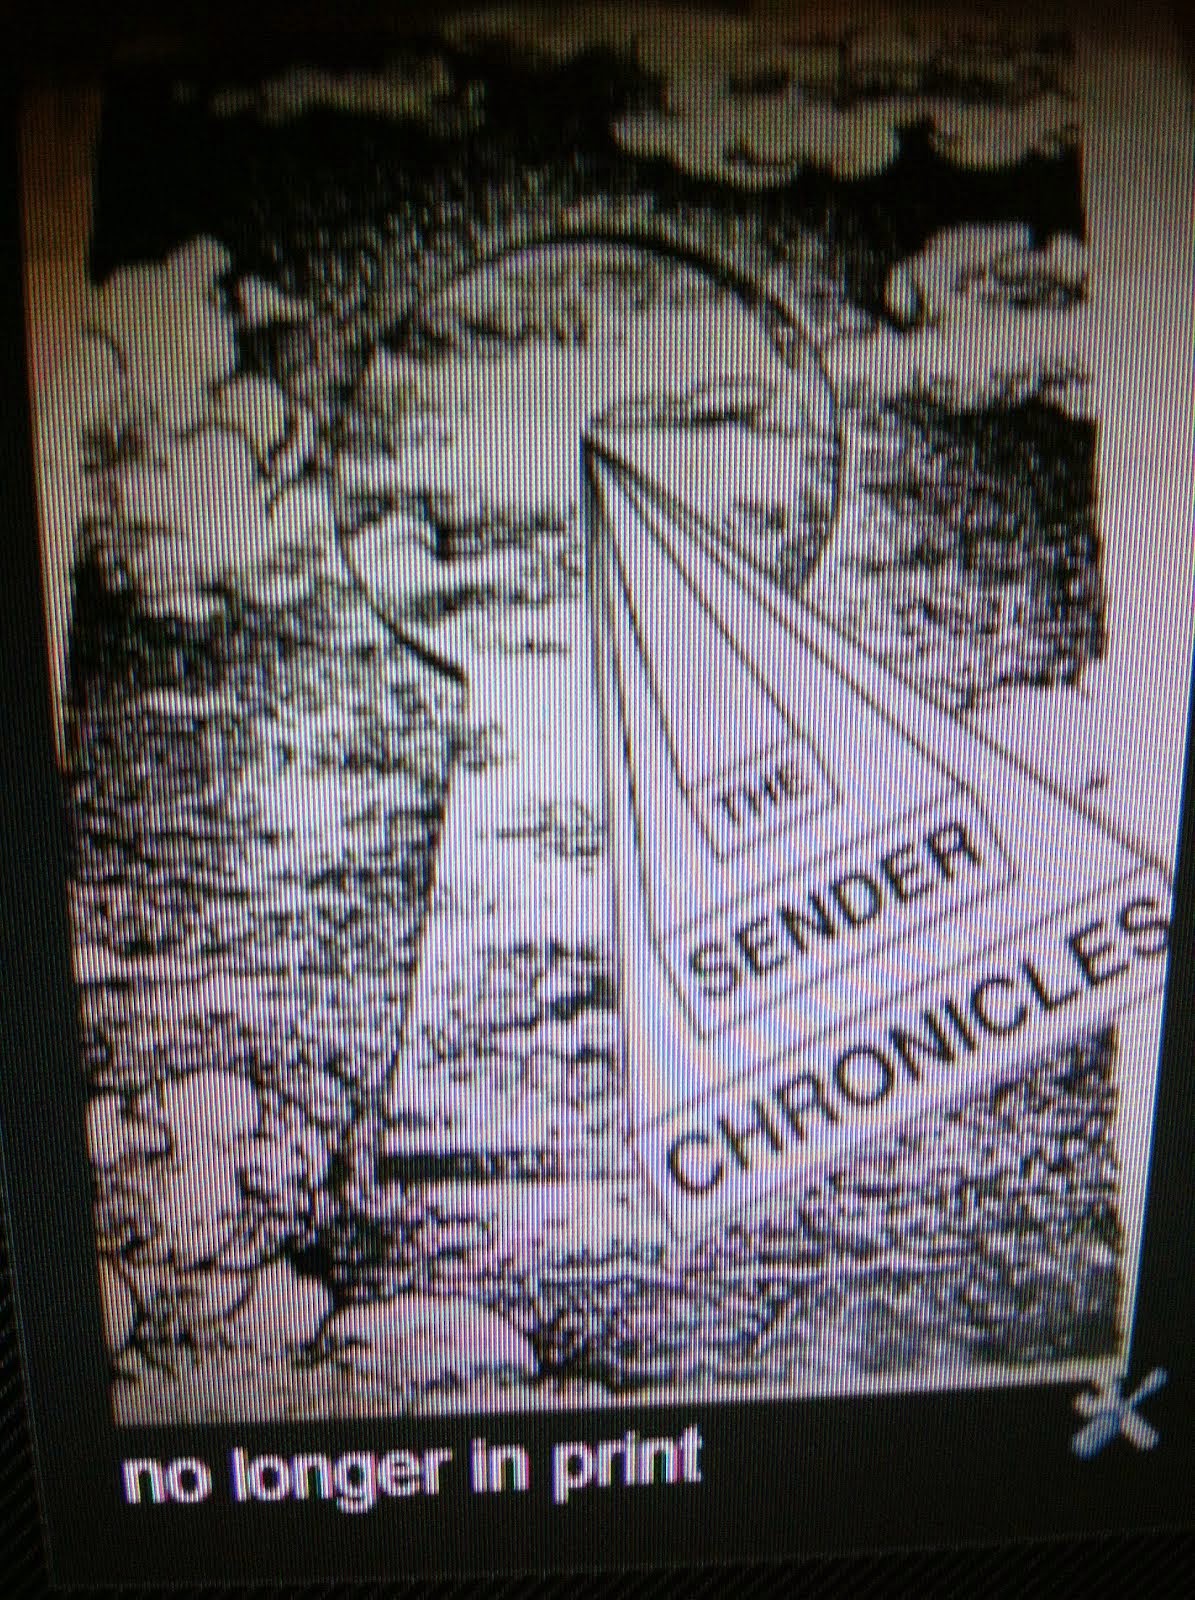 The Sender Chronicles